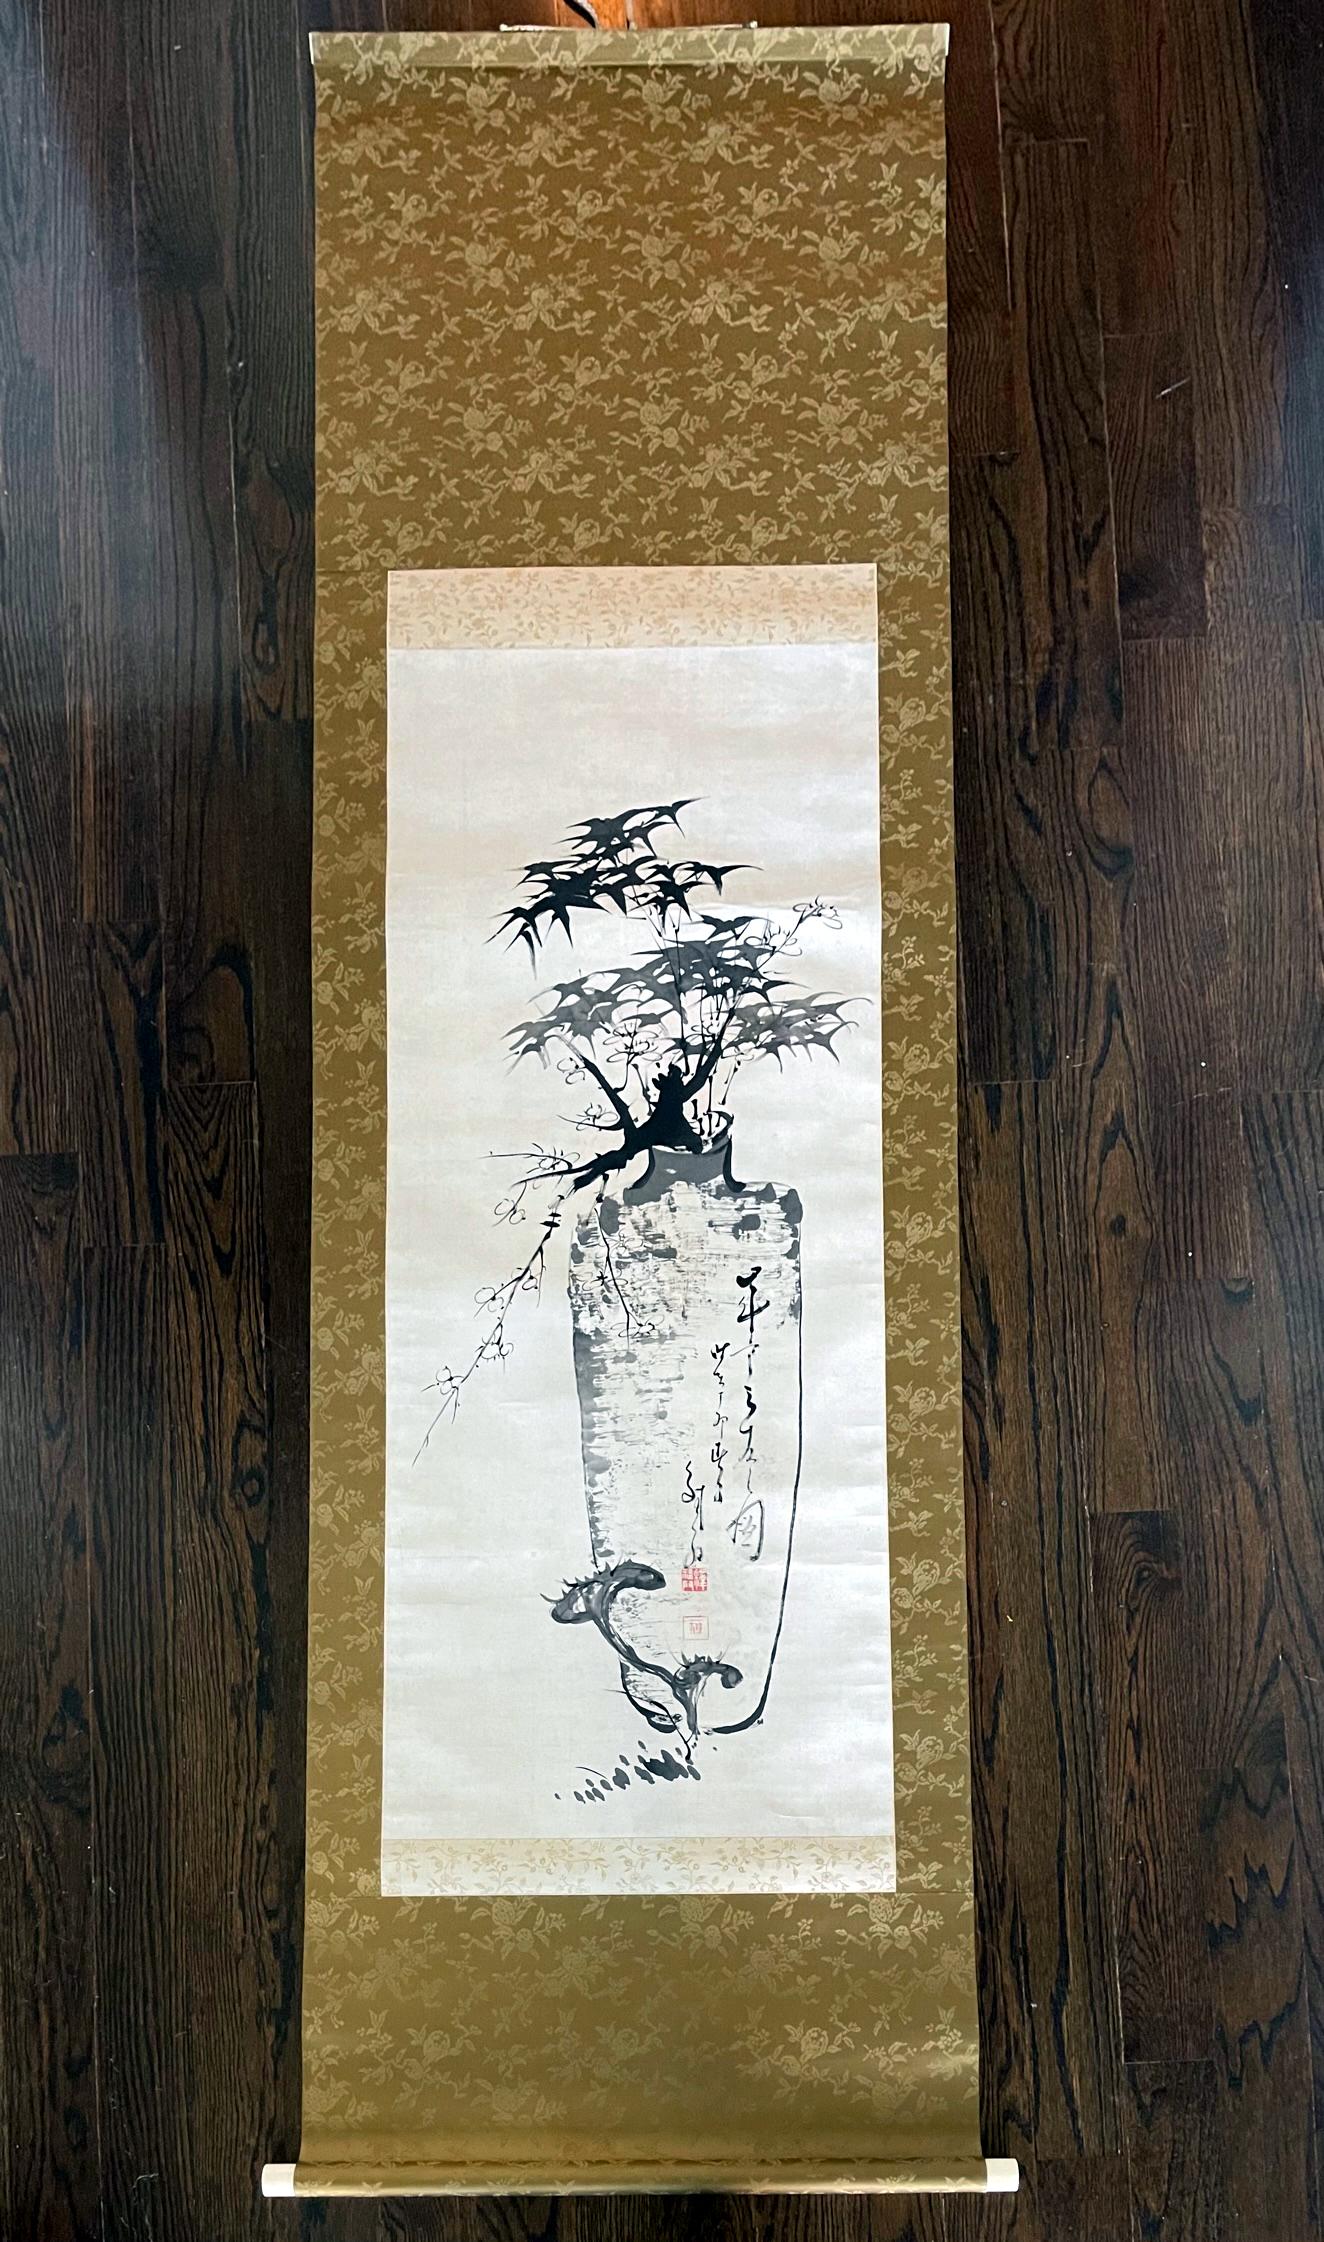 Eine hängende Tusche (Sumi-e) Seidenrolle des japanischen Zen-Künstlers Hidaka Tetsuo (1791-1871). Die in Brokat eingefasste und auf Pappband aufgezogene Schriftrolle zeigt auf poetische und neuartige Weise 